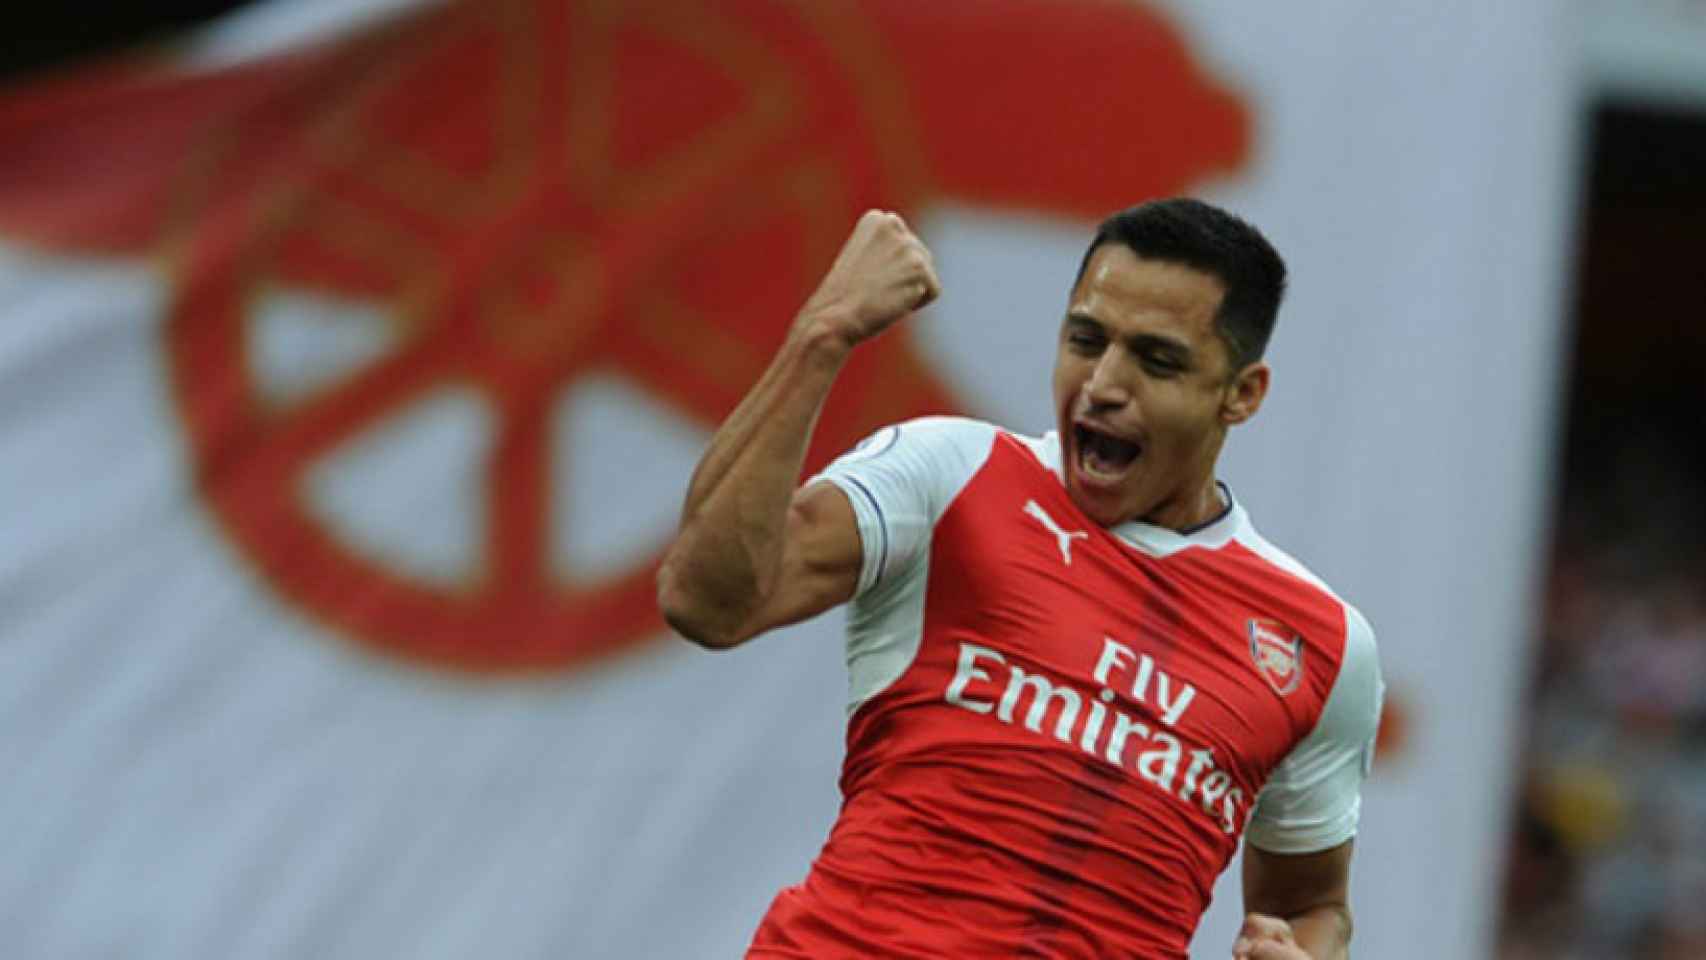 Alexis celebra un gol con el Arsenal. Foto: arsenal.com